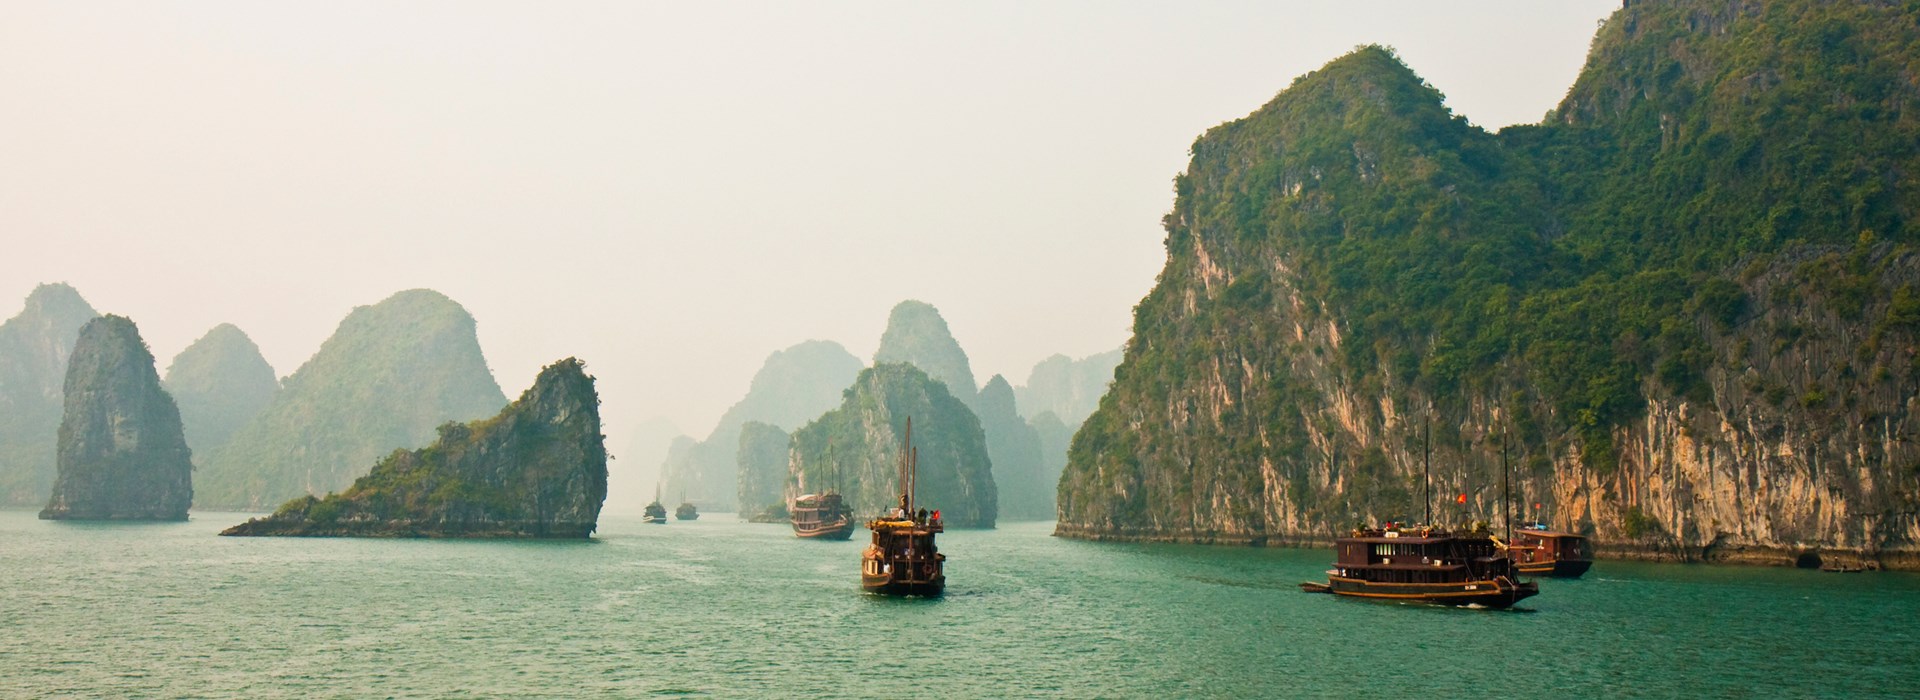 Visiter La Baie d'Halong - Vietnam